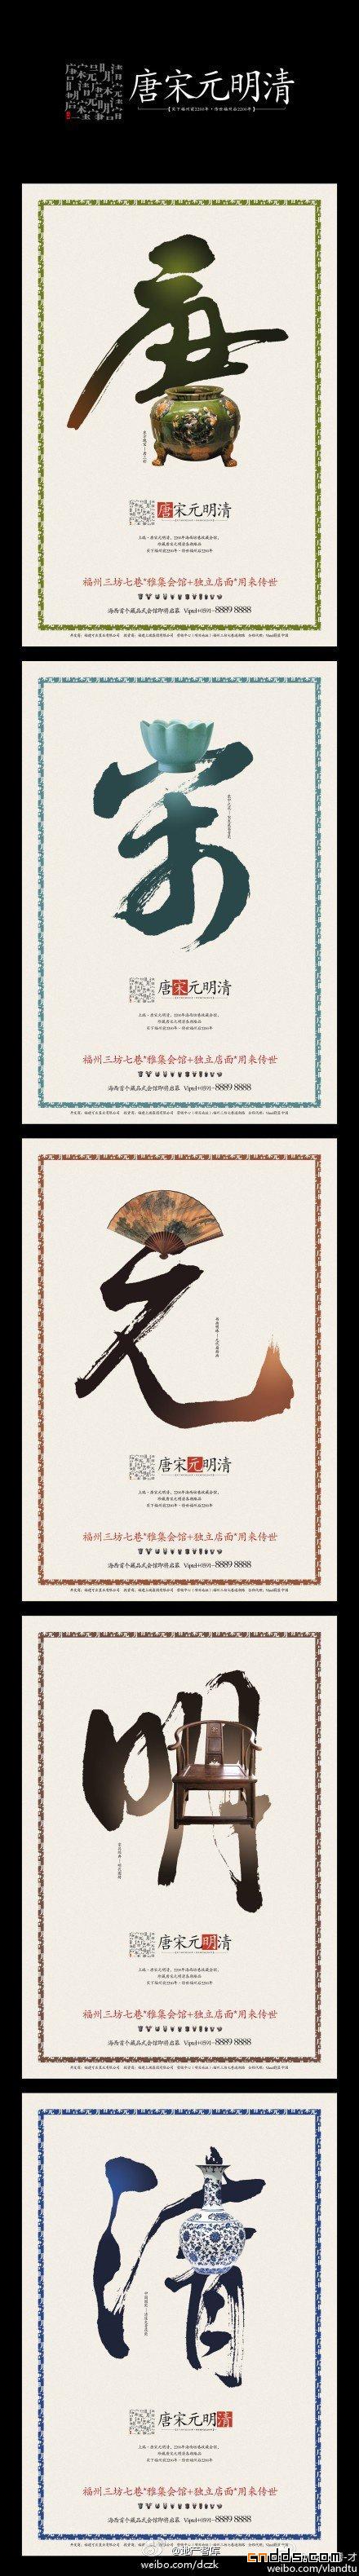 极具中国古典韵味的海报设计